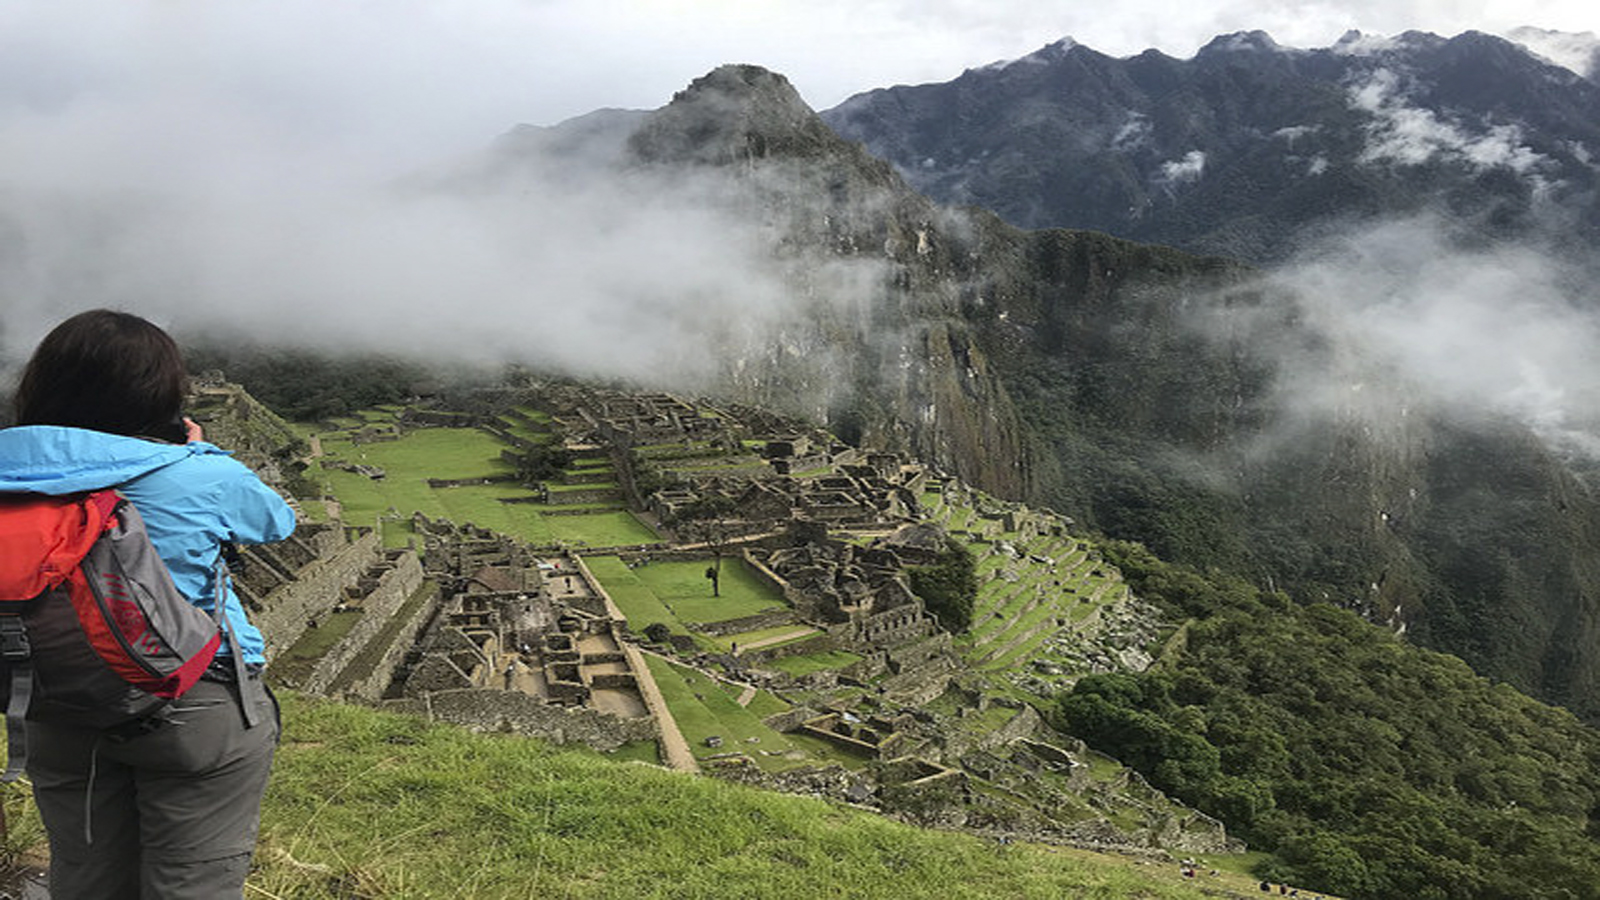 Peru March 13, 2018